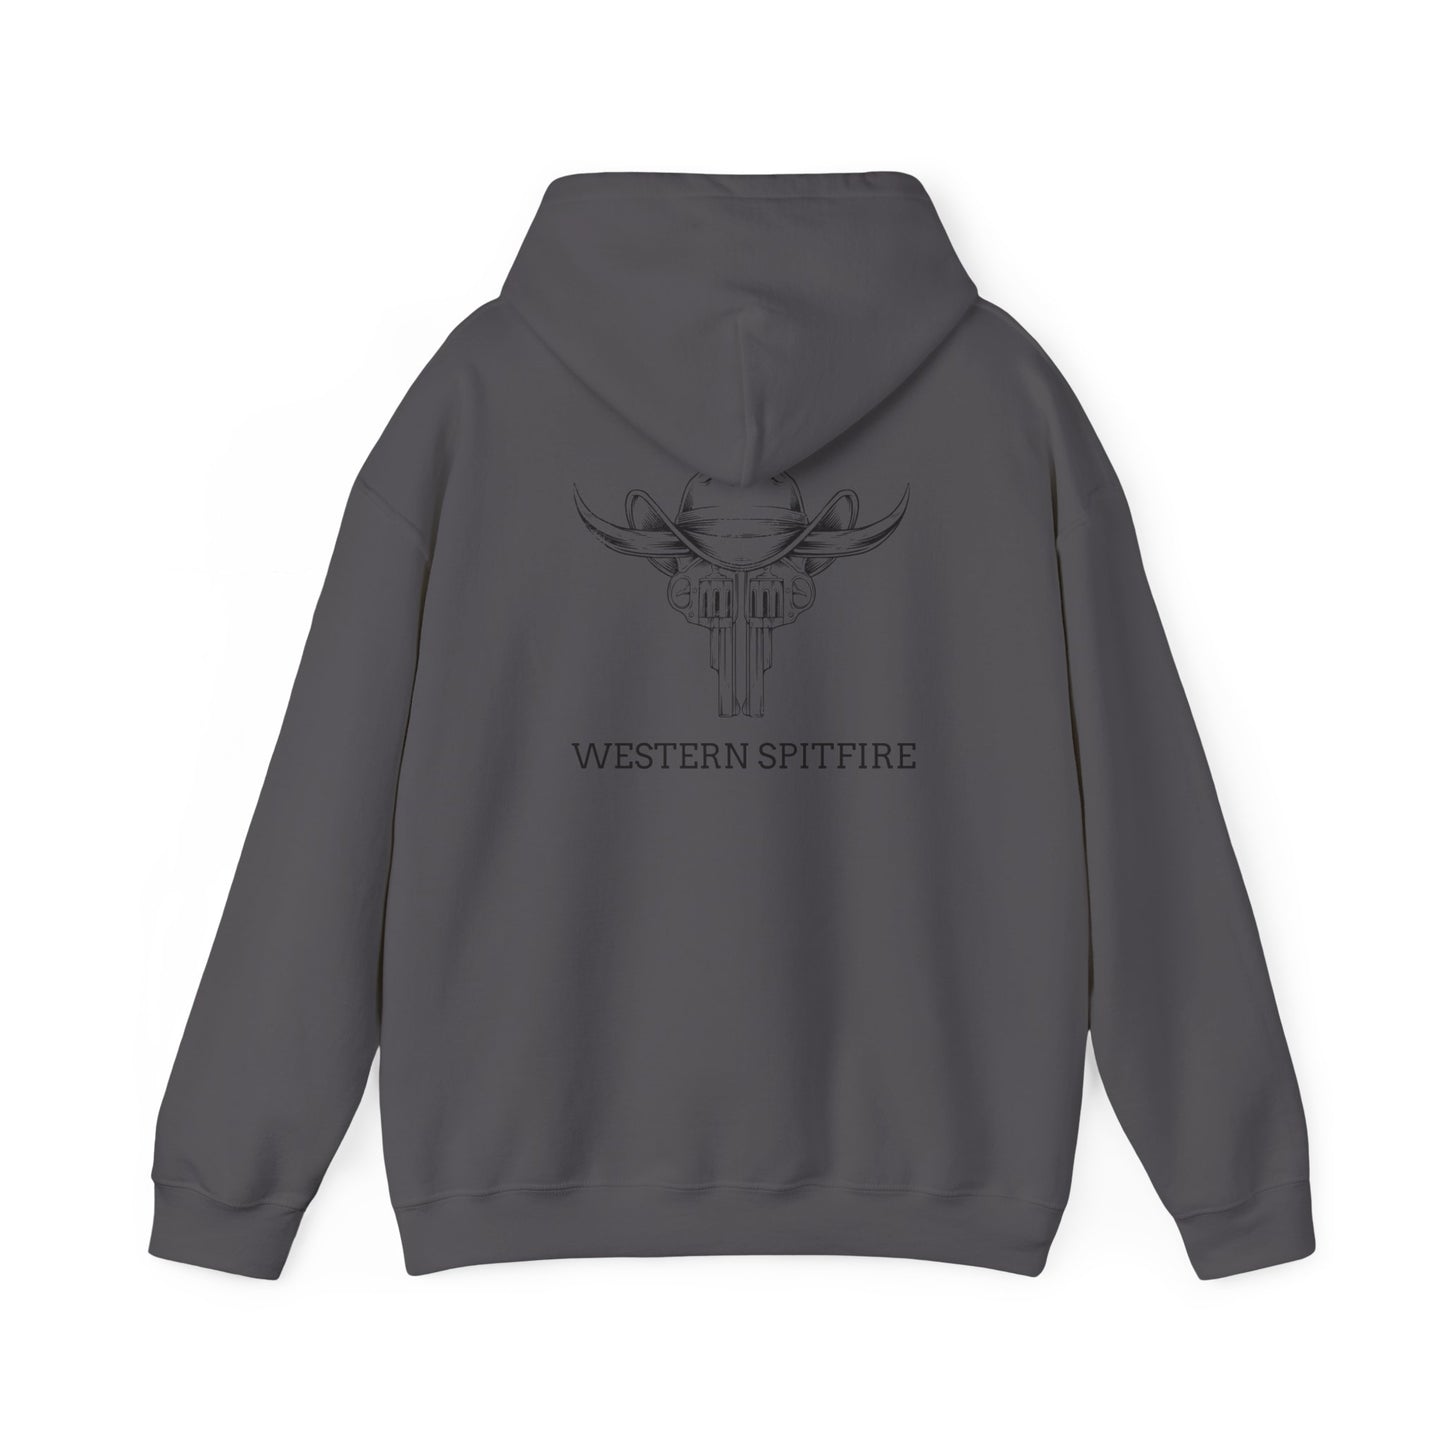 WESTERN SPITFIRE Hooded Sweatshirt